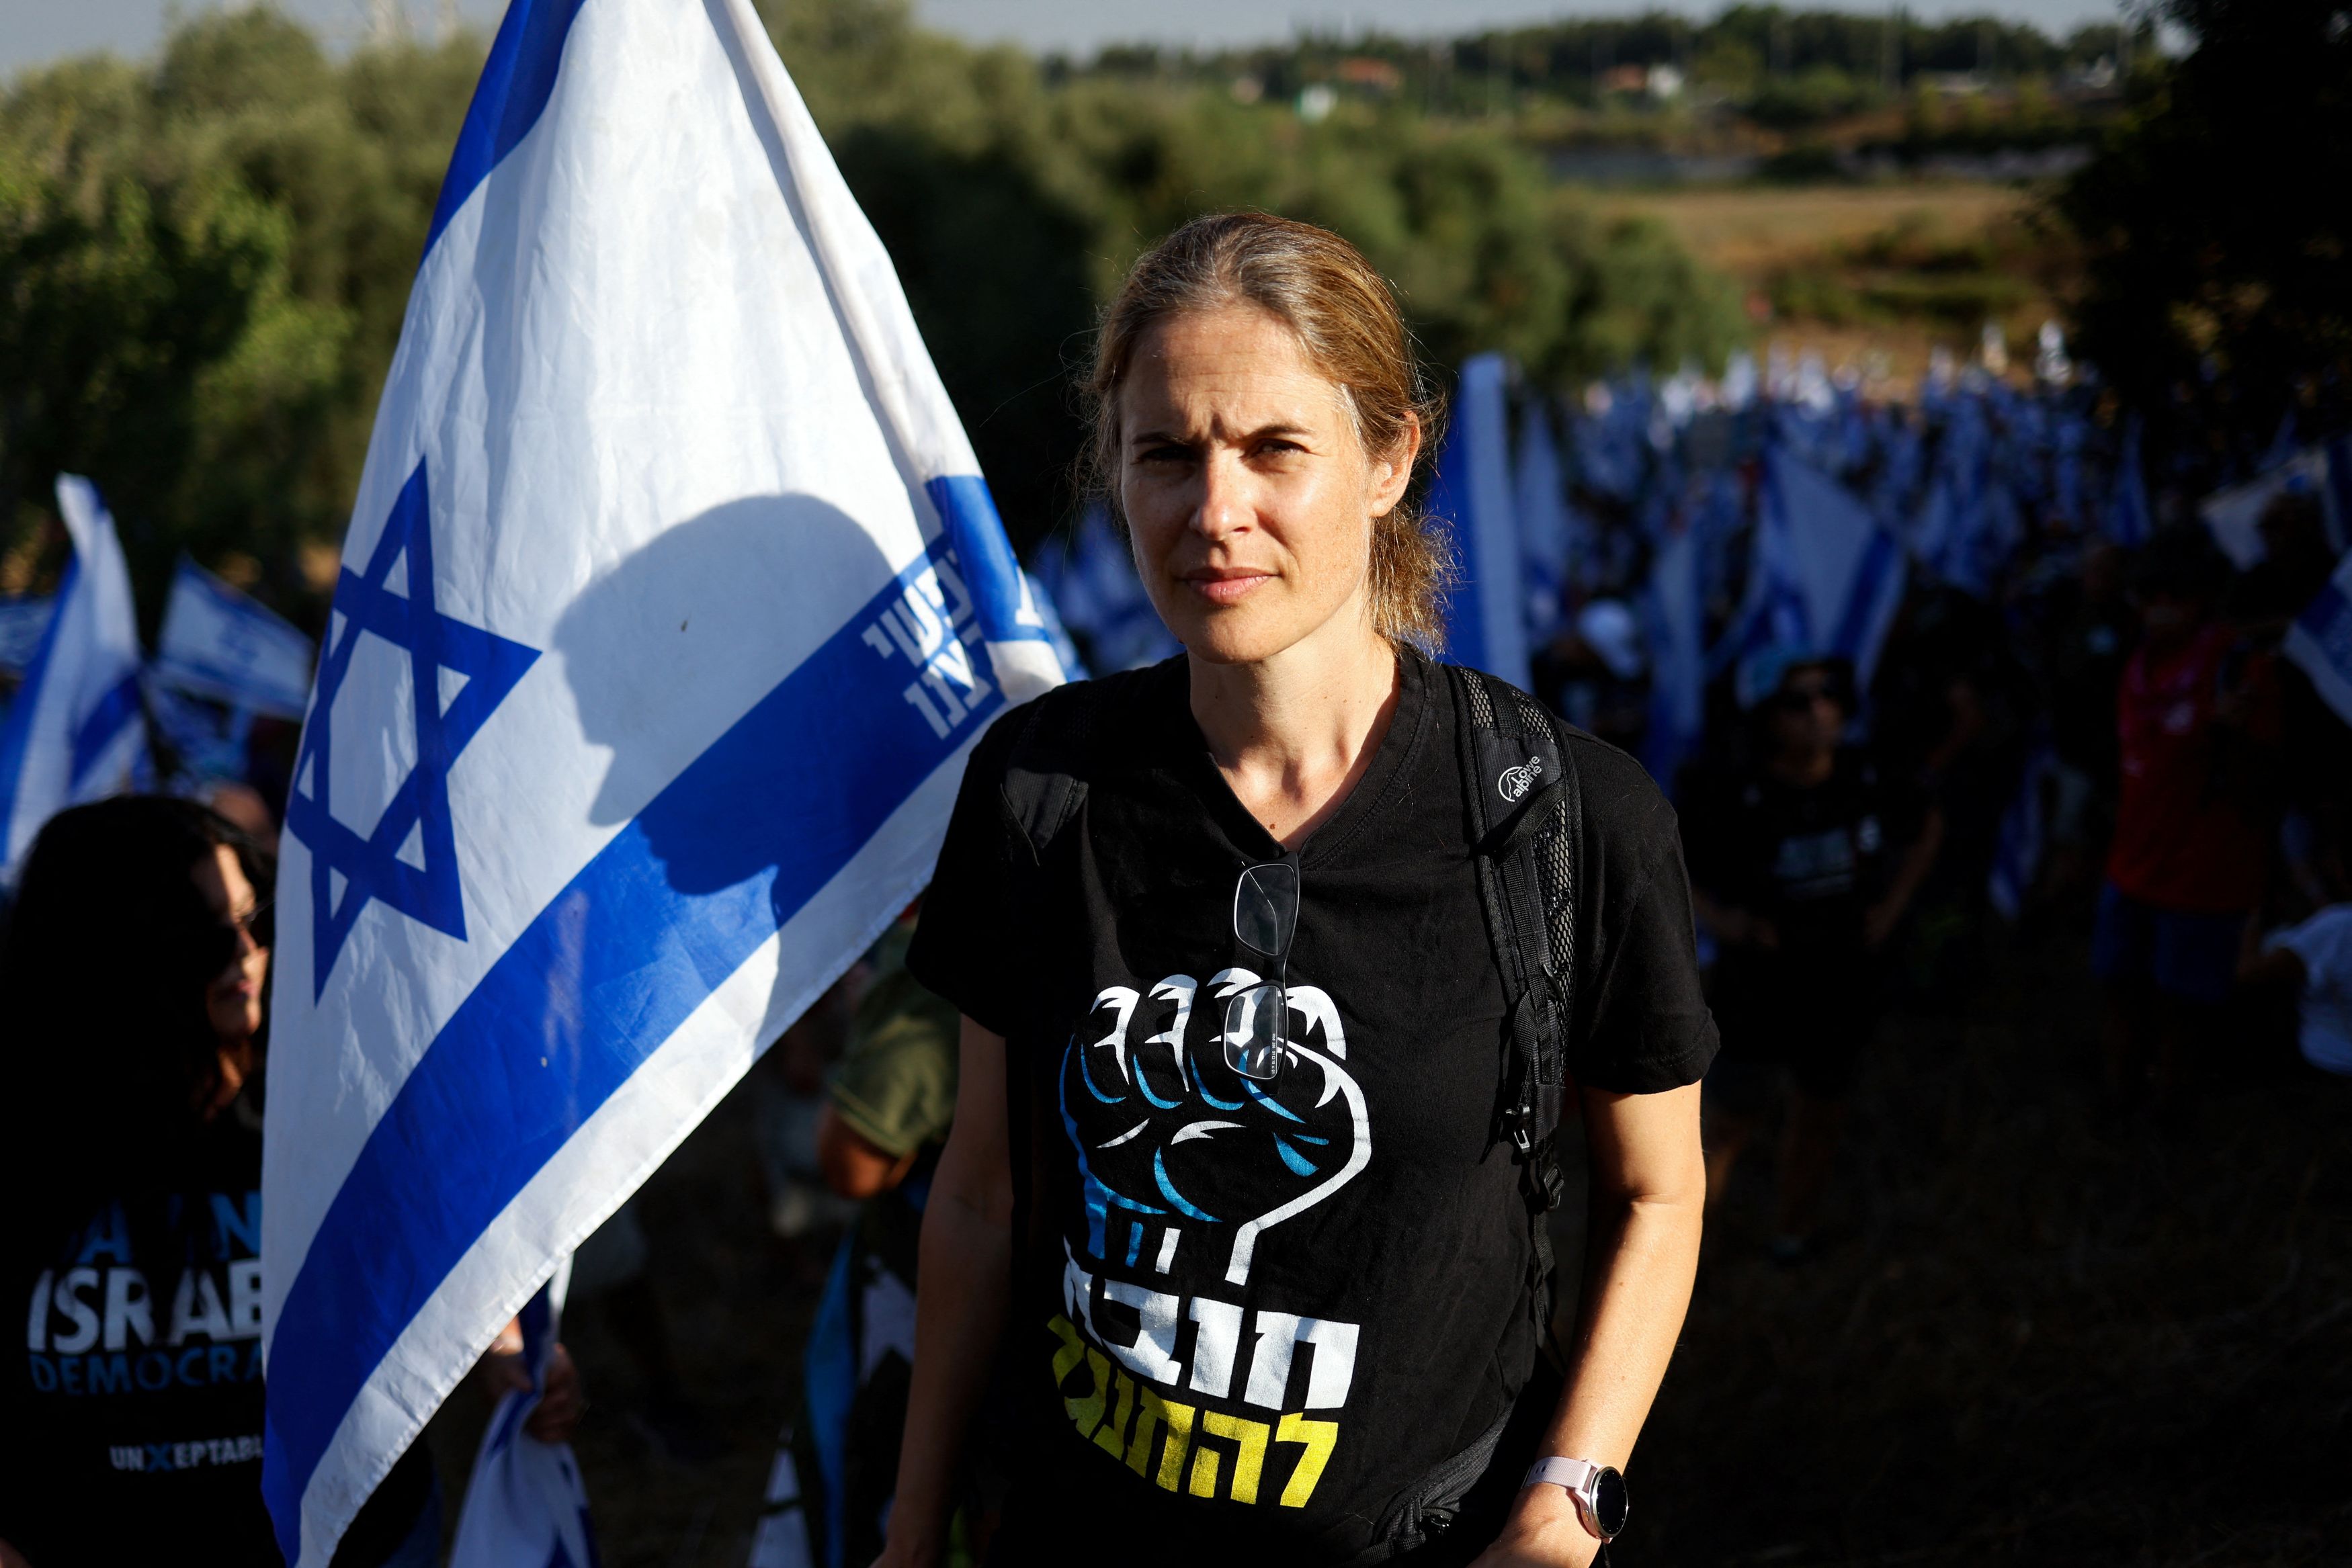 Αντίσταση, γένος θηλυκού: Η γυναίκα πίσω από τις διαδηλώσεις που έχουν ξεσηκώσει το Ισραήλ